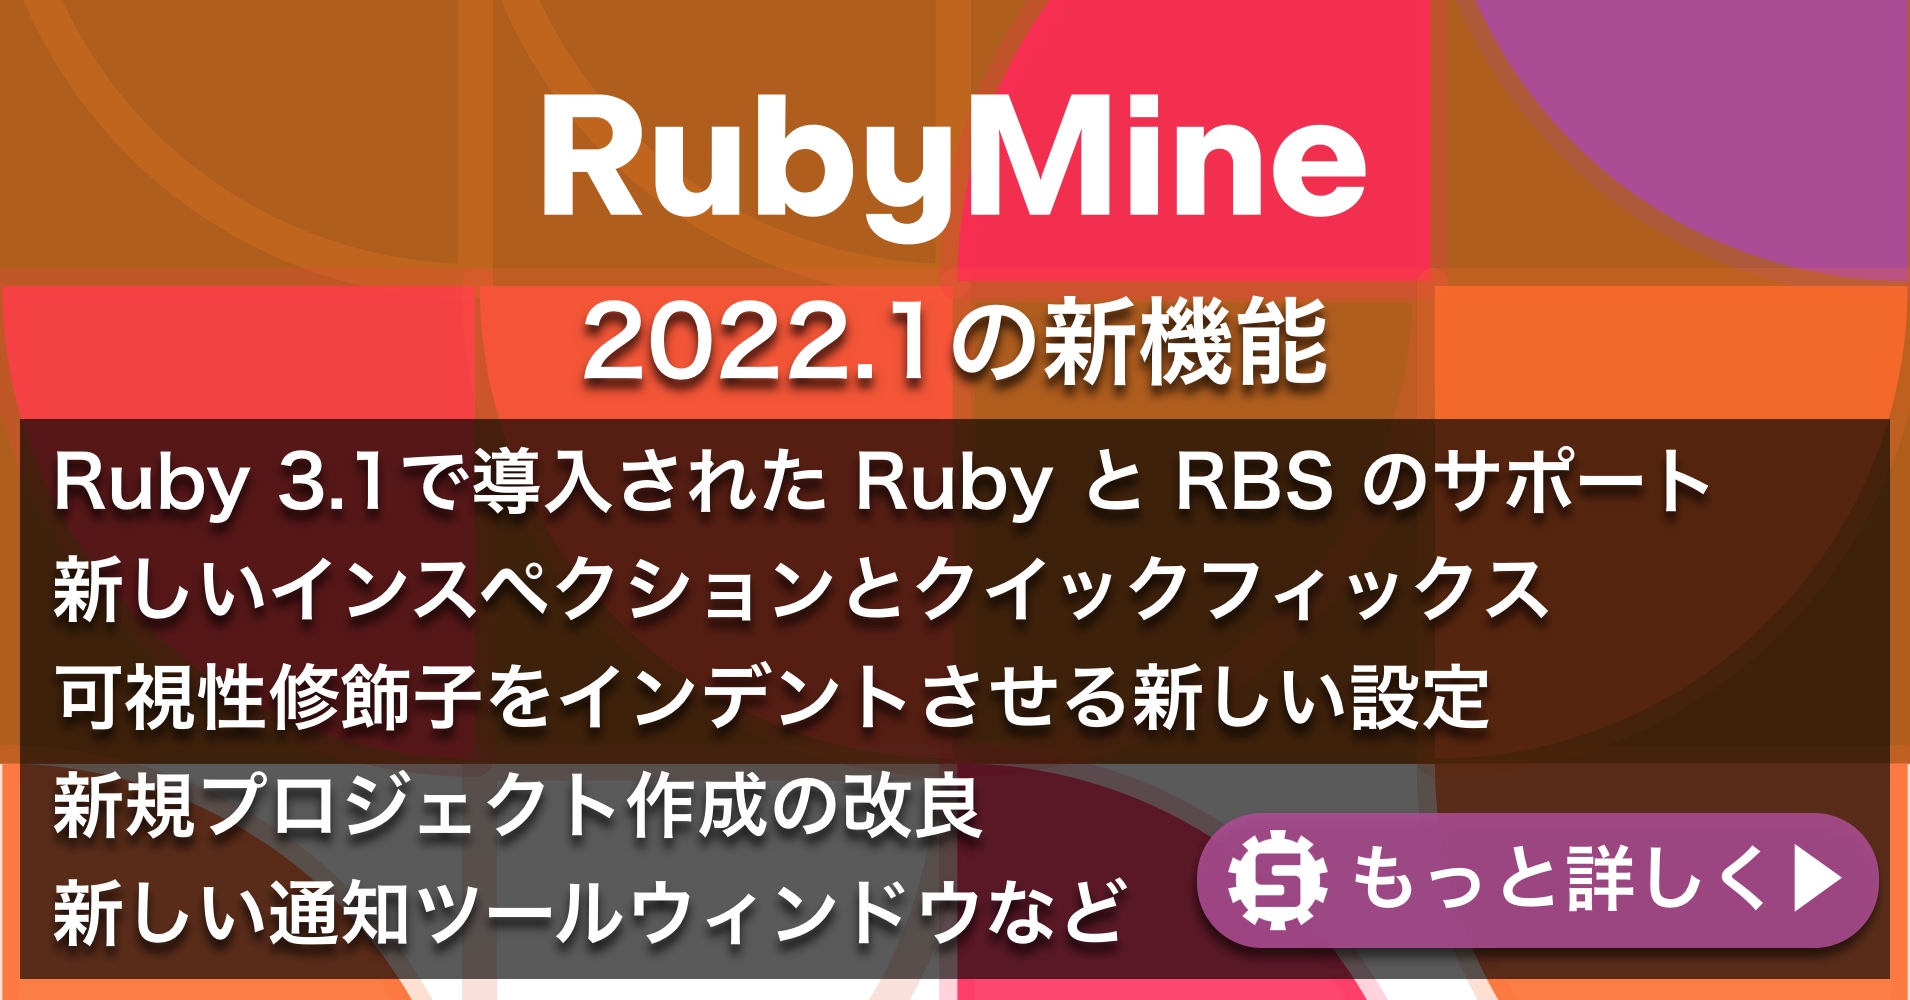 RubyMine 2022.1の新機能